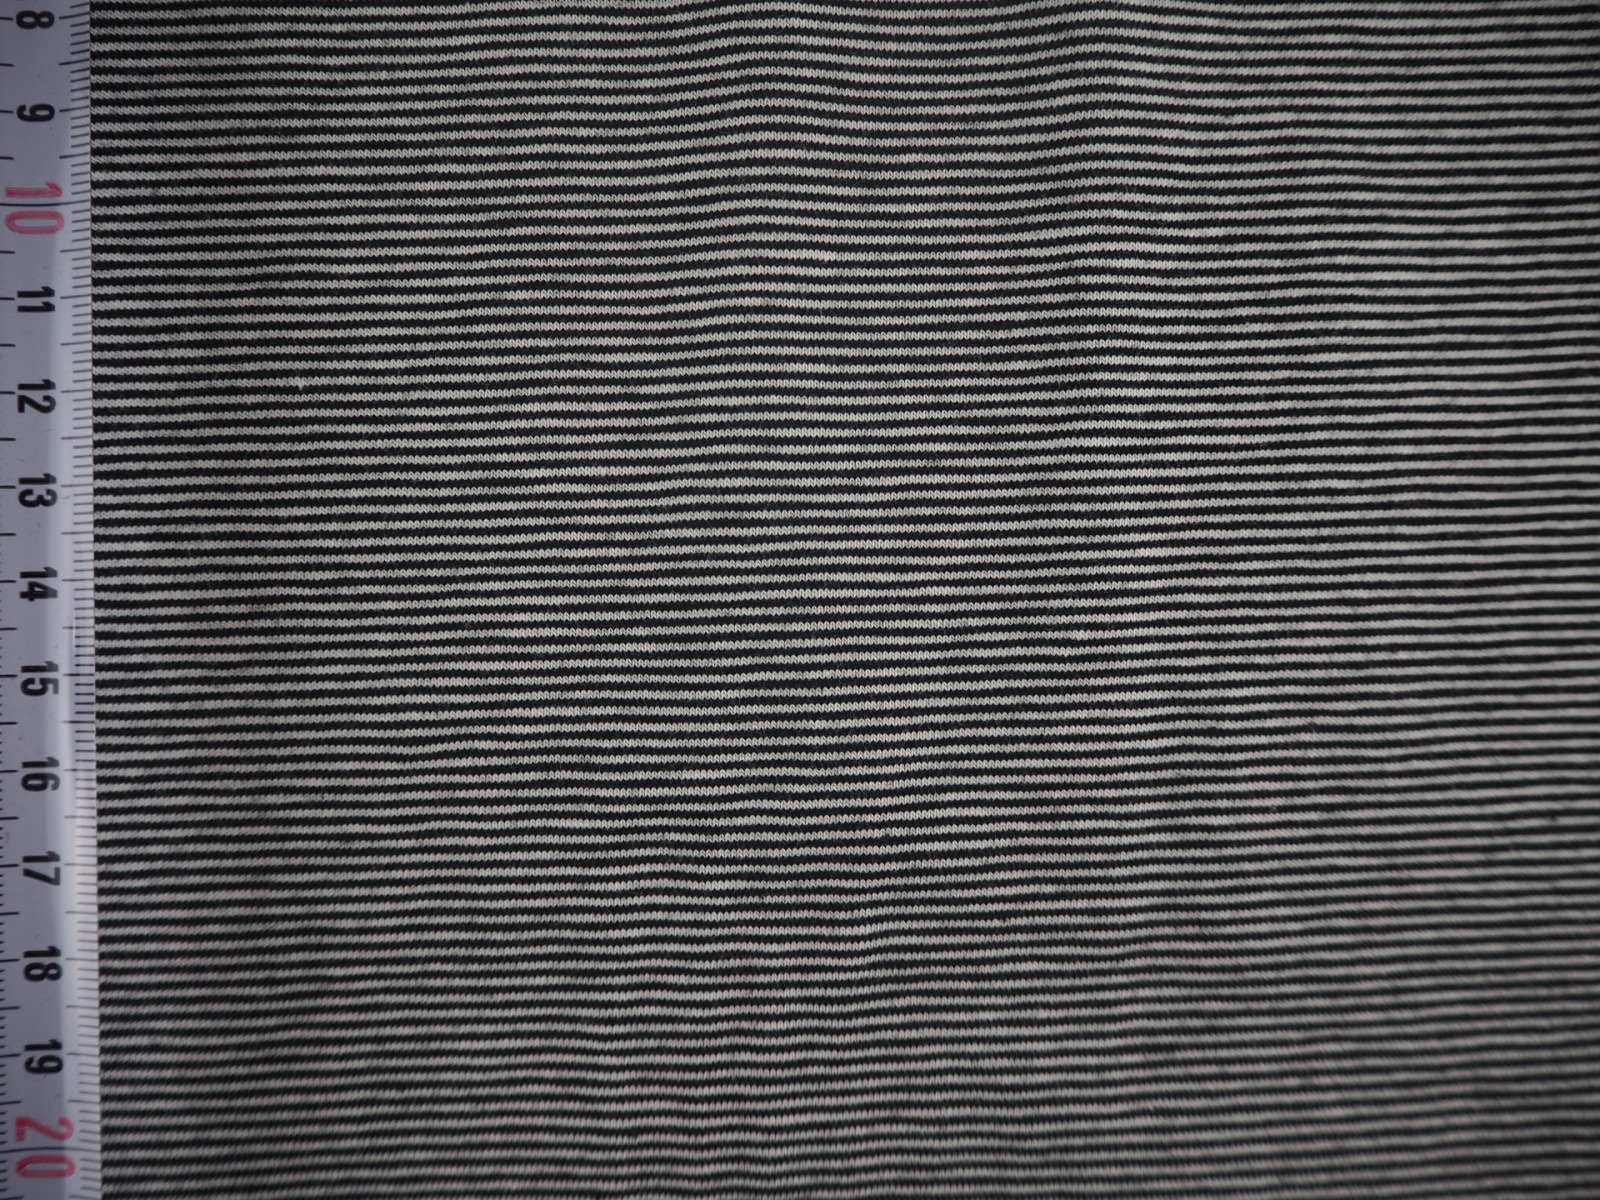 Jersey 1440 EUR/m feine Ringel 1 mm schwarz weiß Baumwolljersey gestreift Ringeljersey Stoffe Meterware